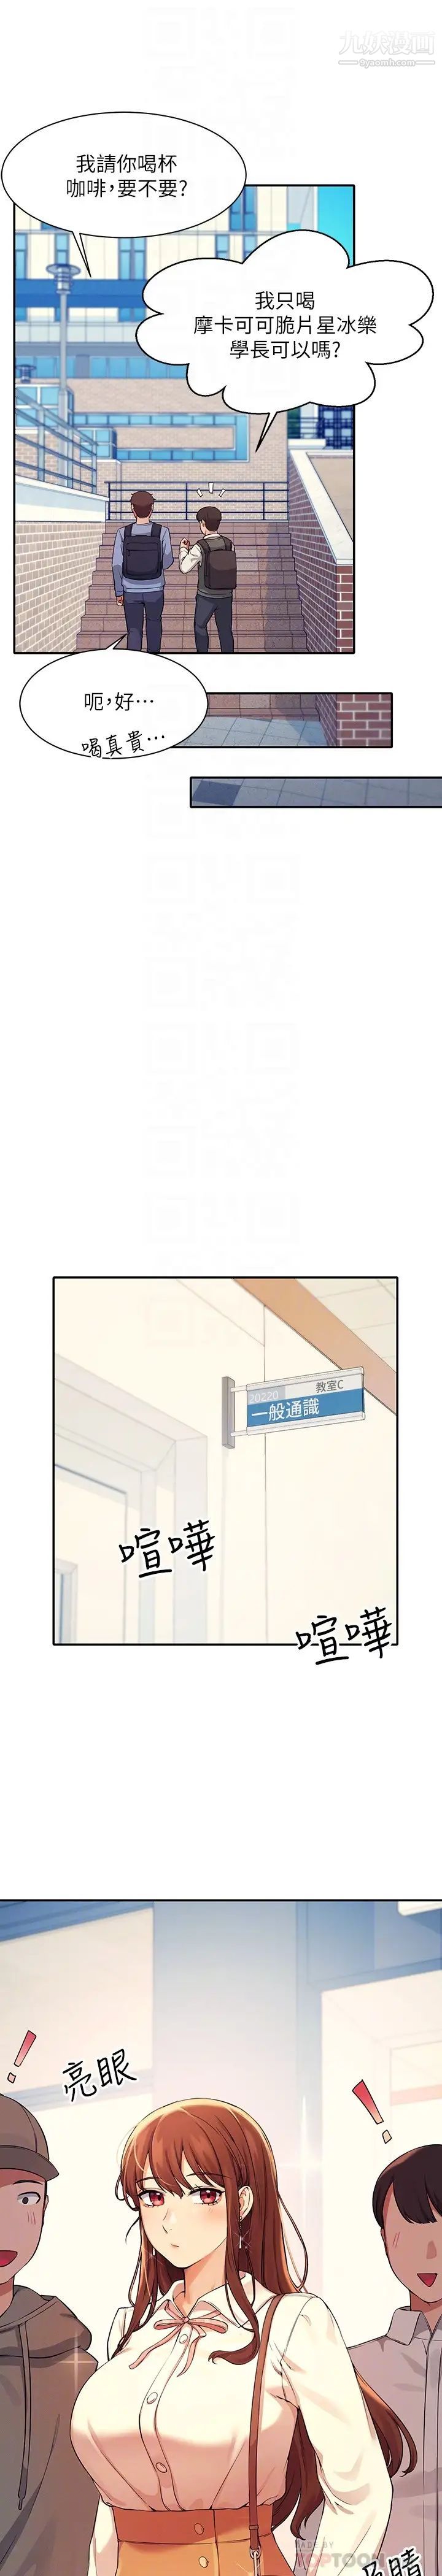 第15話 - 男廁裸露現場!12.jpg